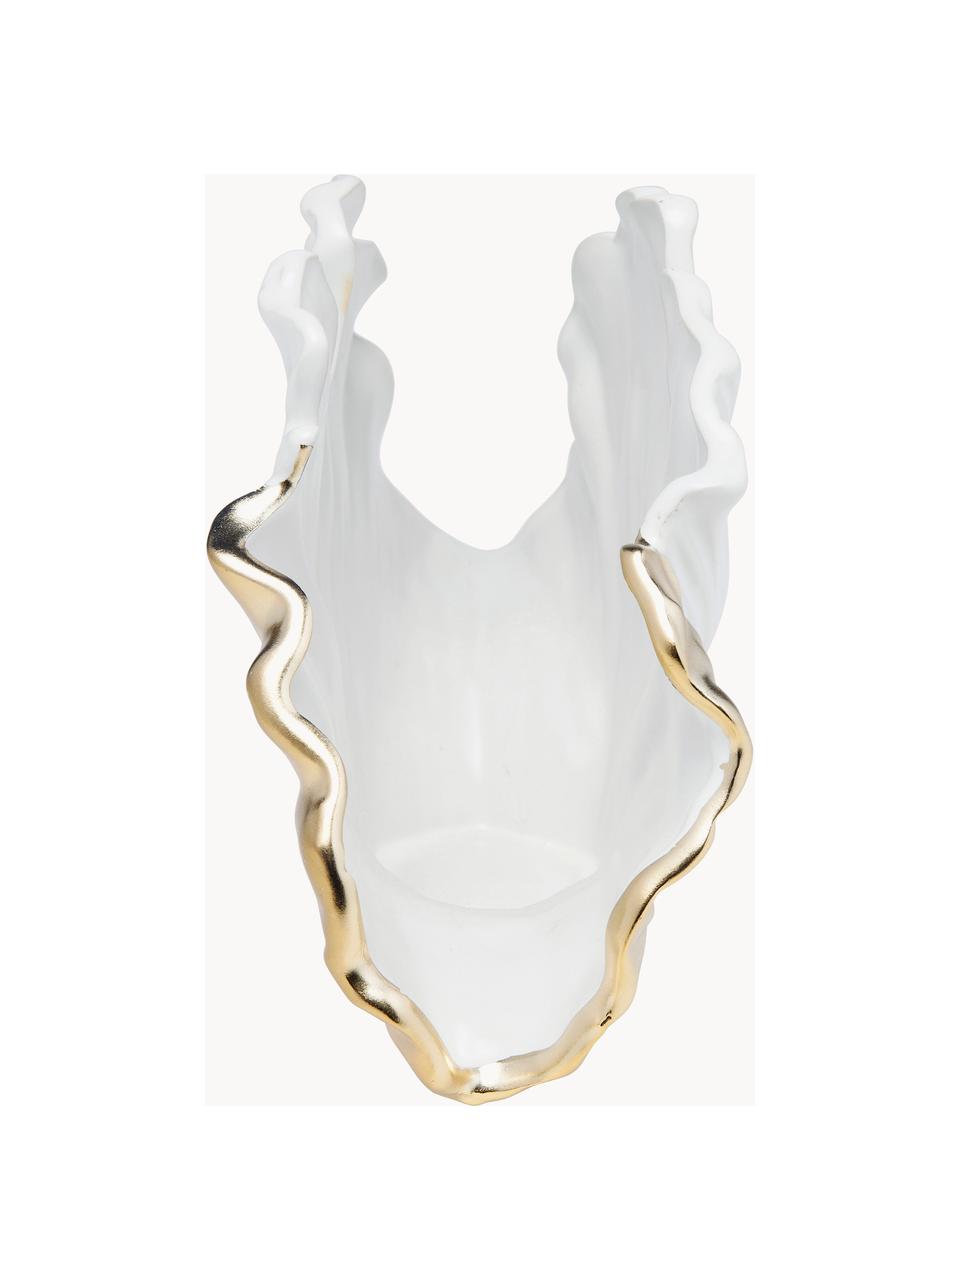 Design-Vase Ginkgo Elegance aus Keramik, H 18 cm, Keramik, glasiert, Weiß, Goldfarben, B 26 x H 18 cm